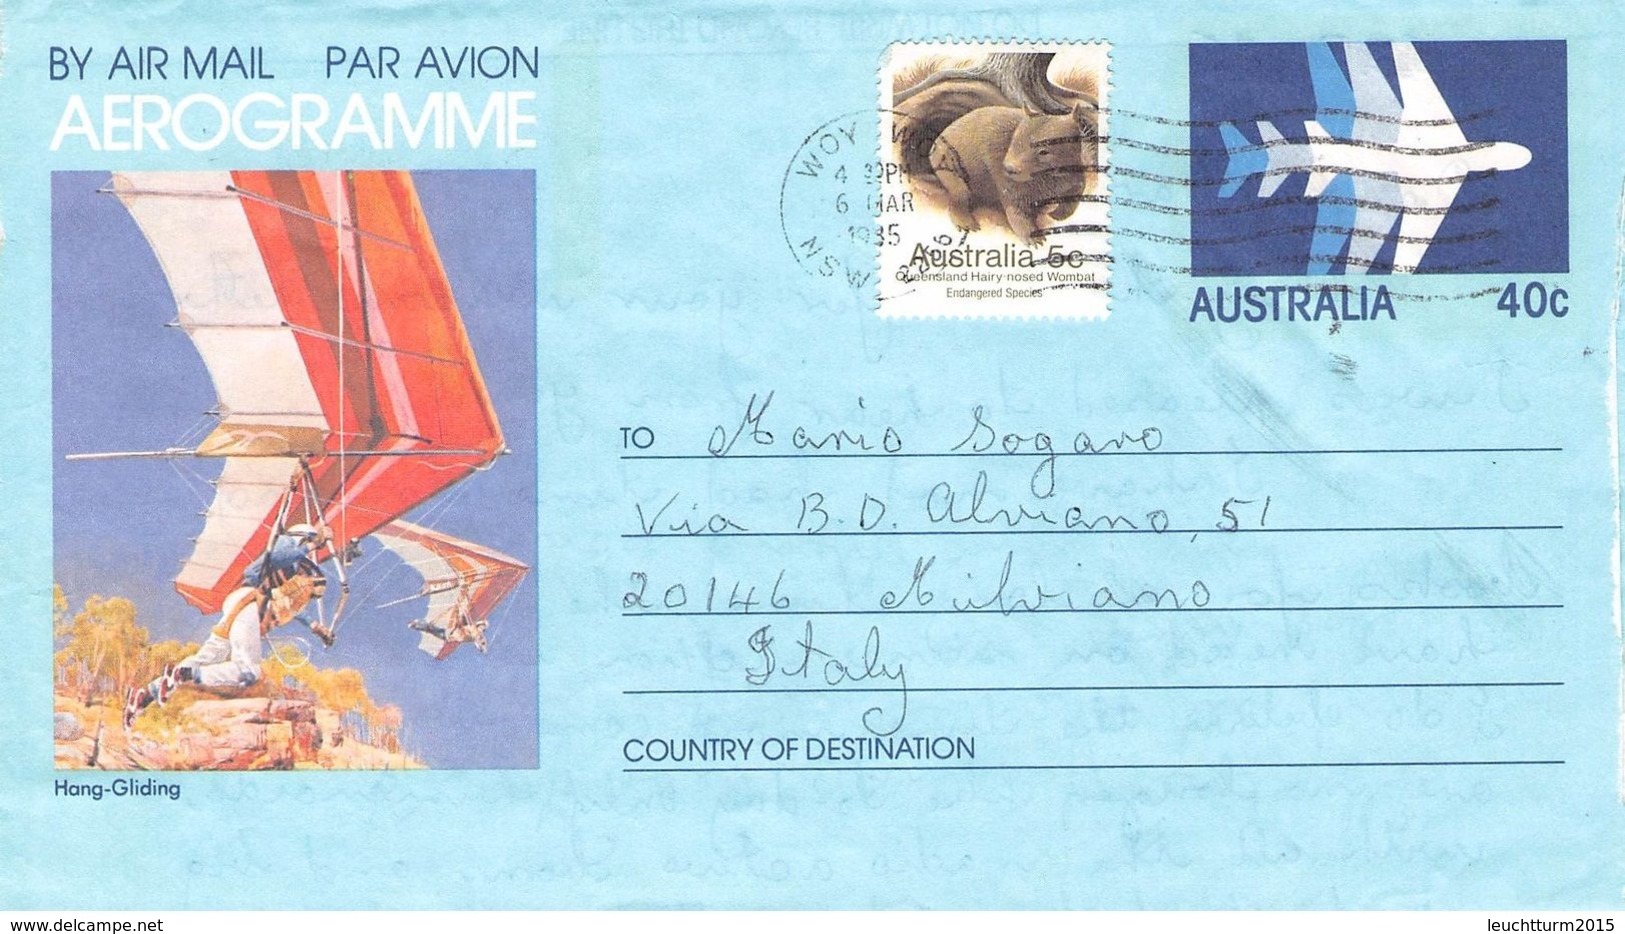 AUSTRALIA - AEROGRAMME 1985 - ITALY /ak996 - Aérogrammes